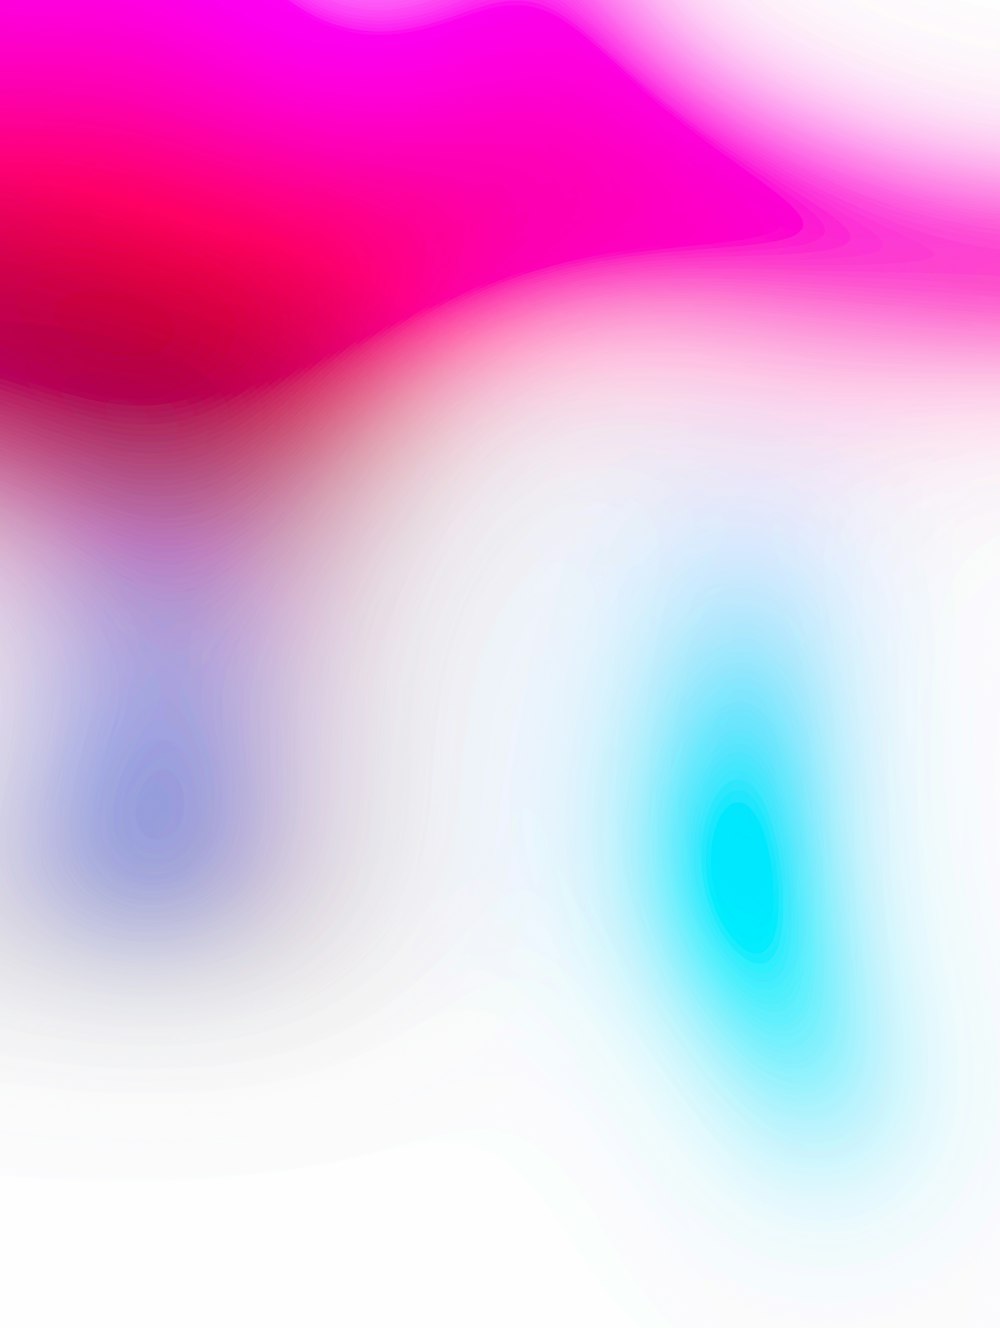 un'immagine sfocata di uno sfondo rosa e blu